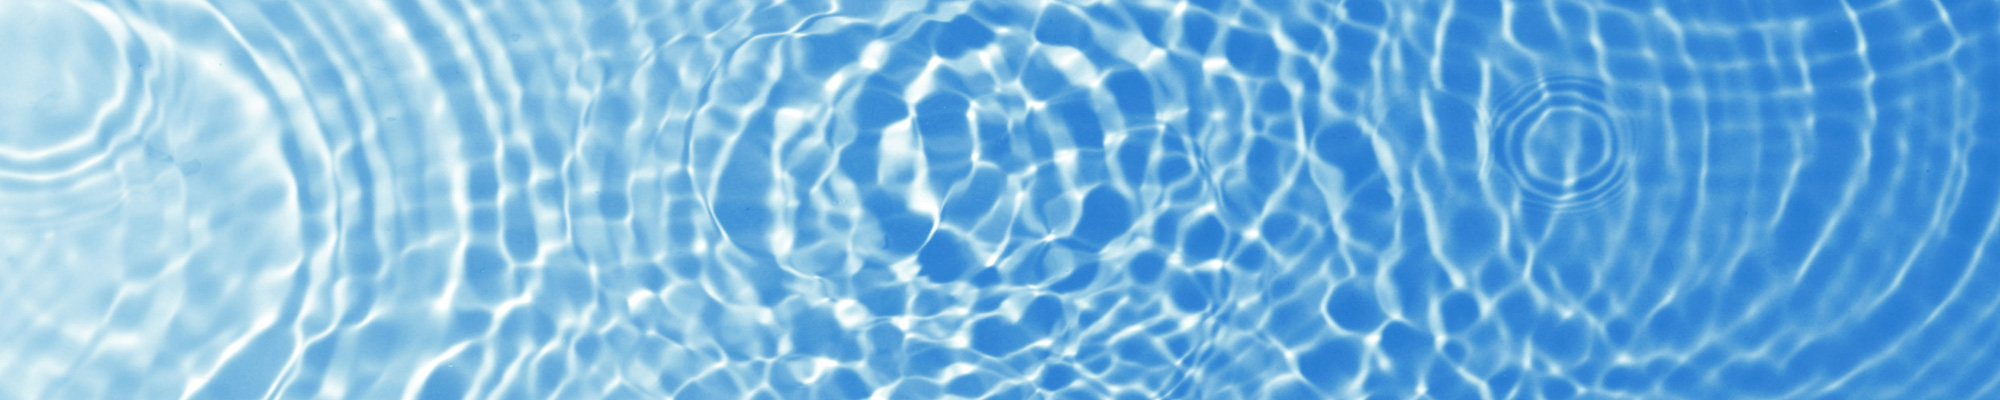 Klares sauberes Wasser in einem blauen Becken.